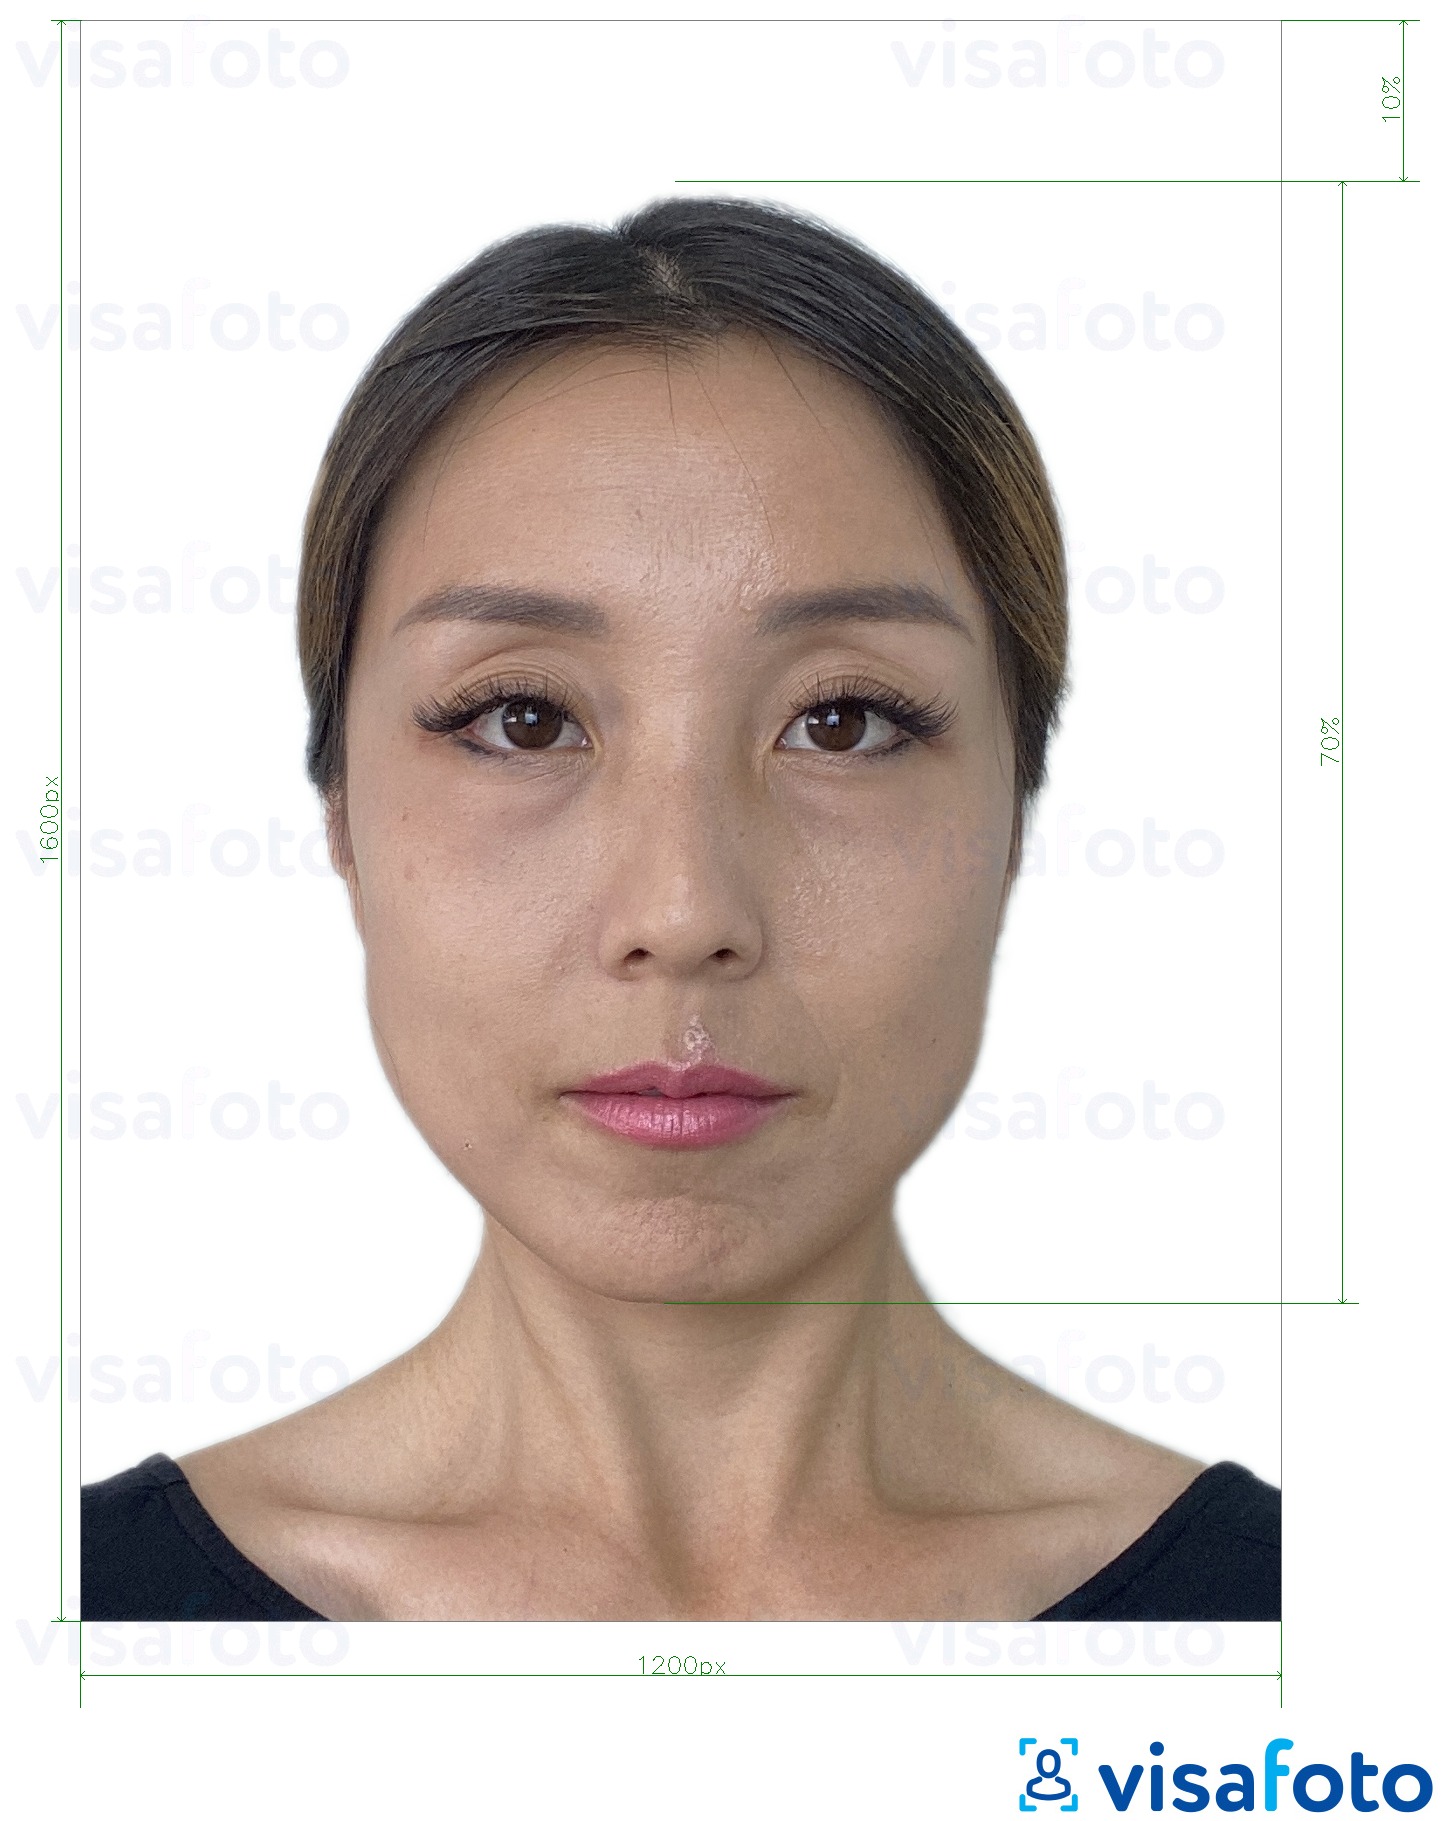 Tam boyut belirtimi olan Hong Kong çevrimiçi e-pasaport 1200x1600 piksel için fotoğraf örneği